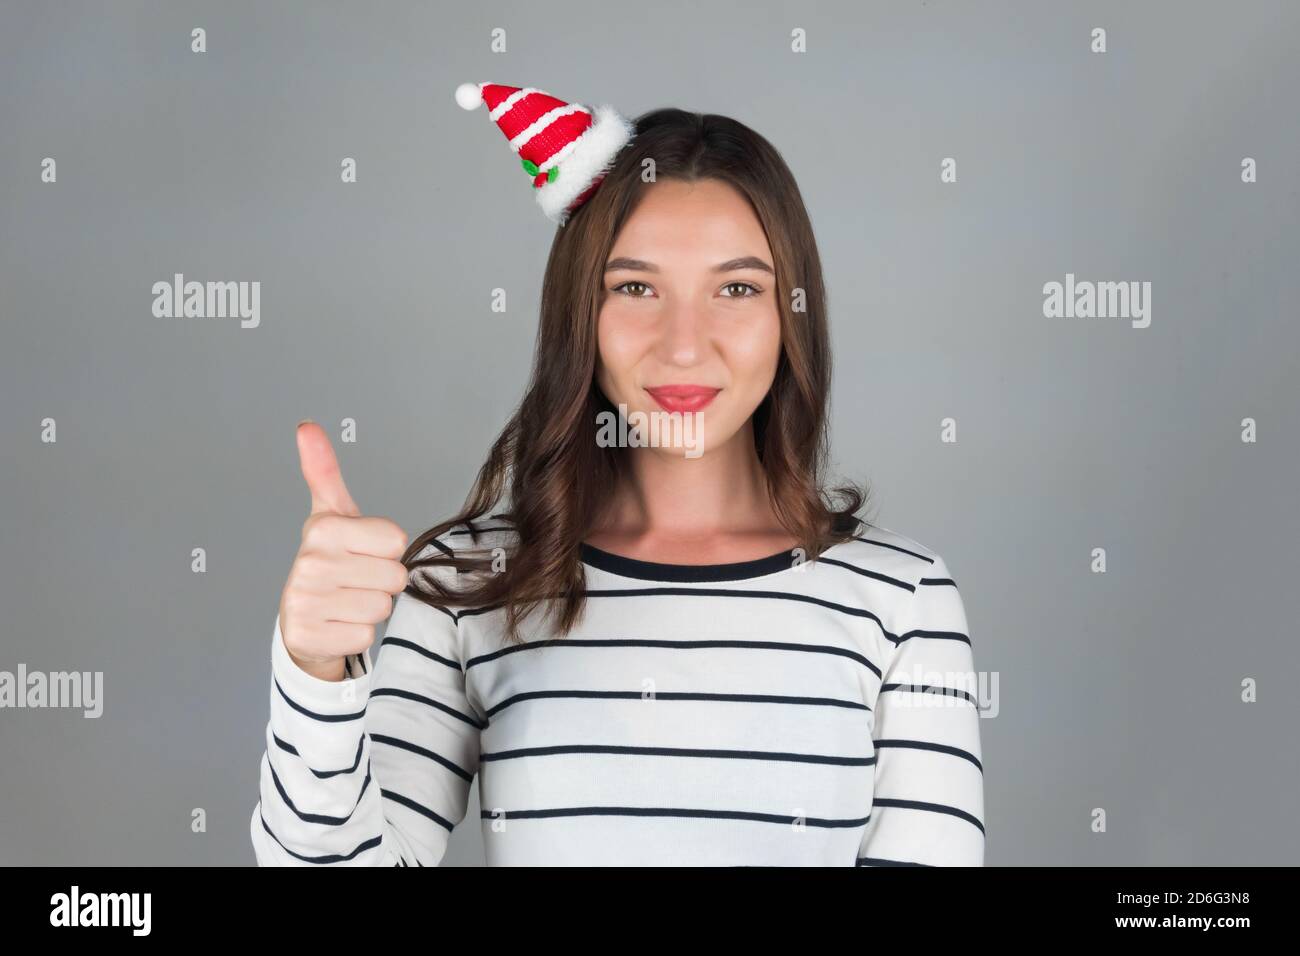 Ein junges Mädchen mit weihnachtlicher Dekoration im Haar posiert für ein Auto. Halten Sie Ihre Finger oben, positive Emotionen. Hochwertige Fotos Stockfoto